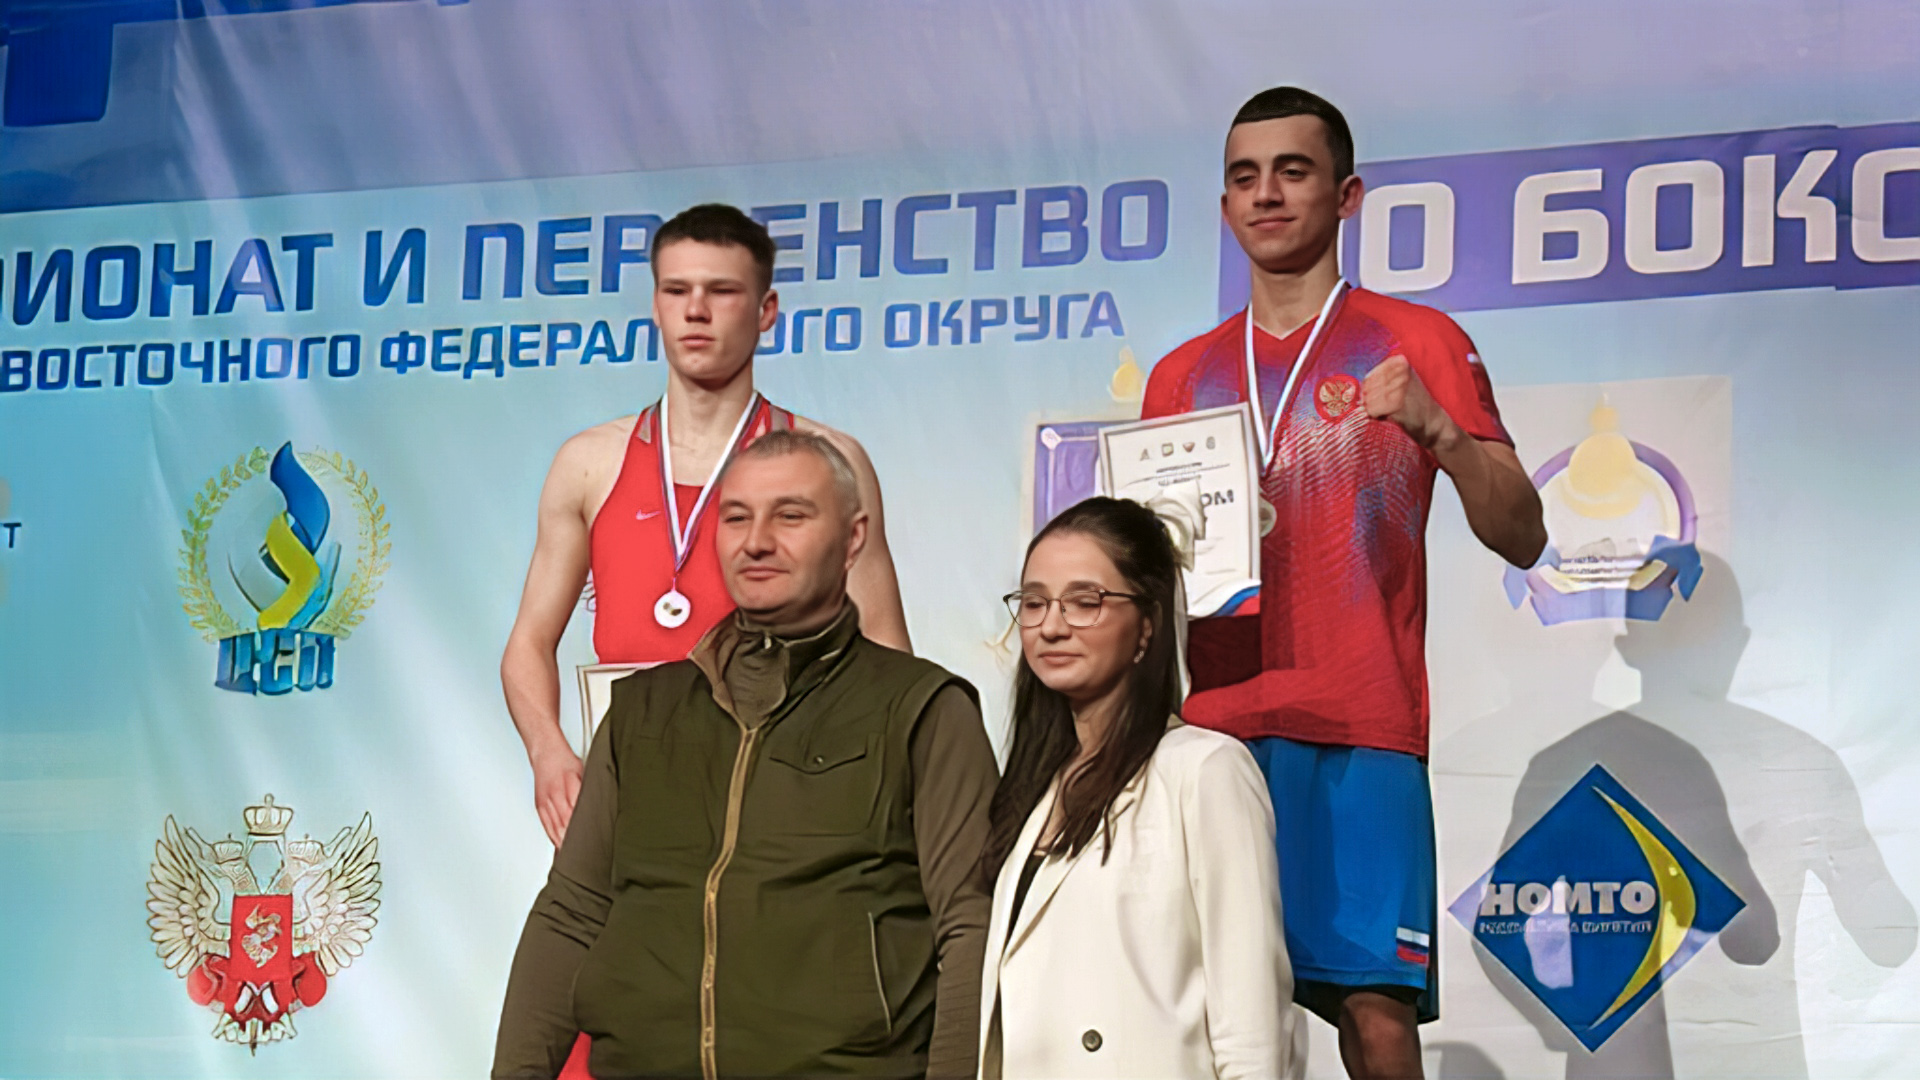 Гароглан Ханджанов стал победителем Дальневосточного чемпионата по боксу